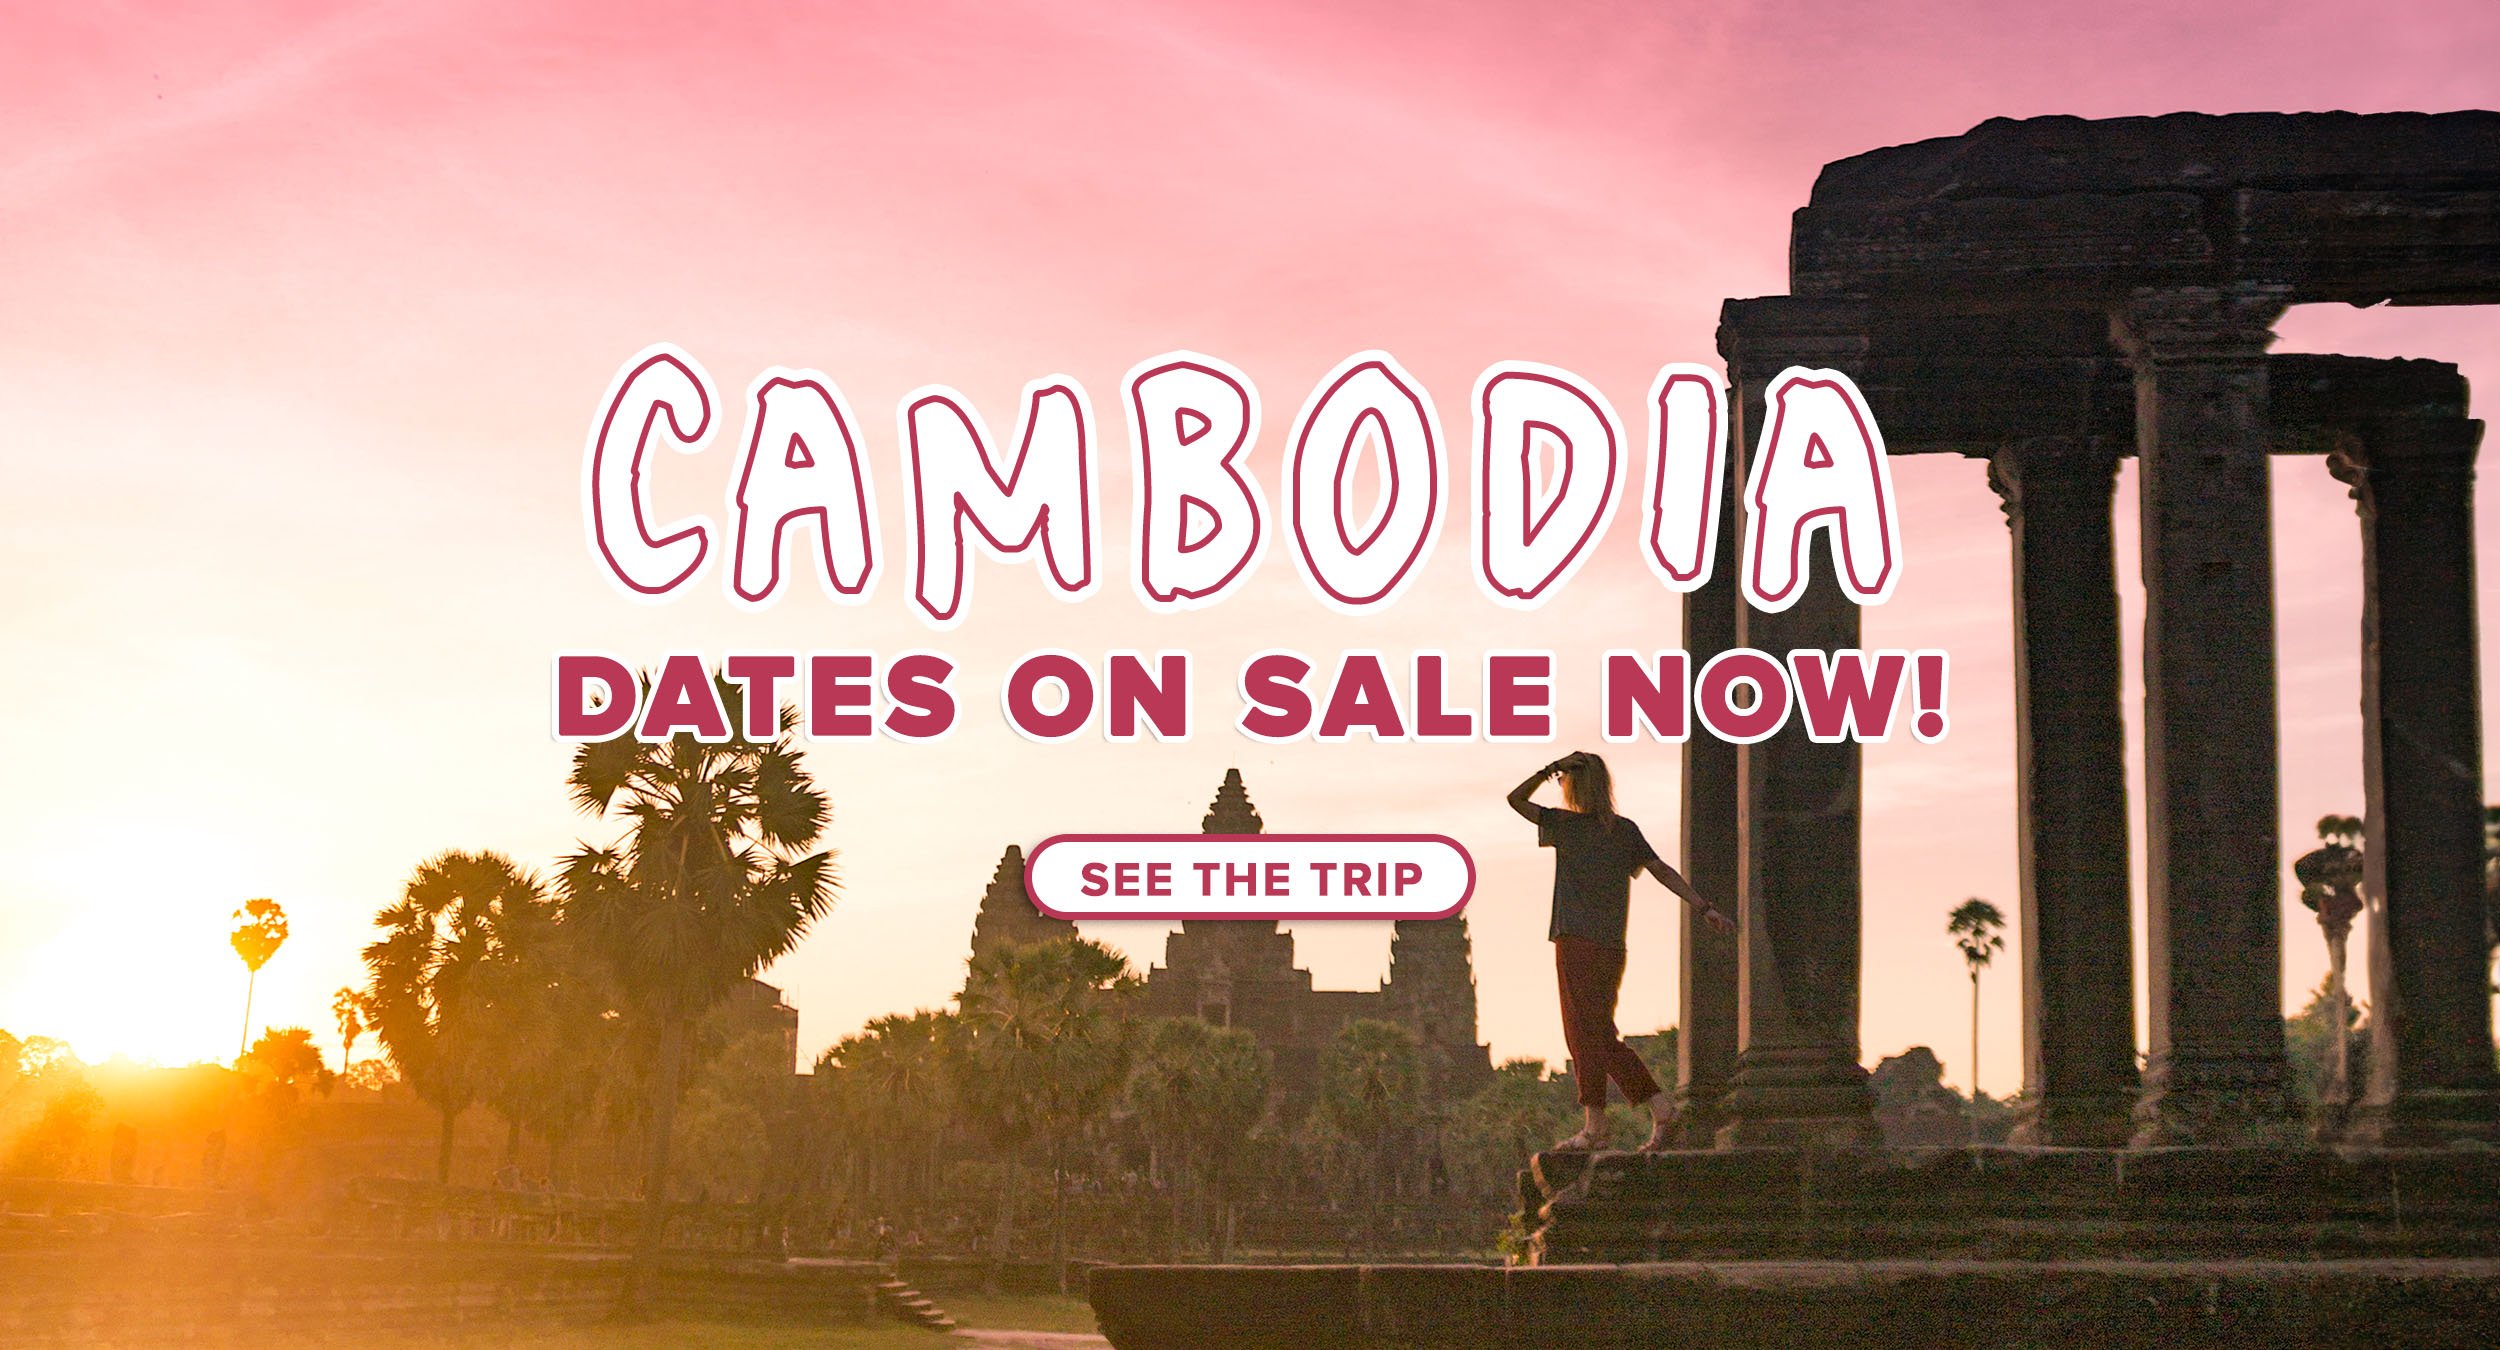 Cambodia_SaleDates_Desktop